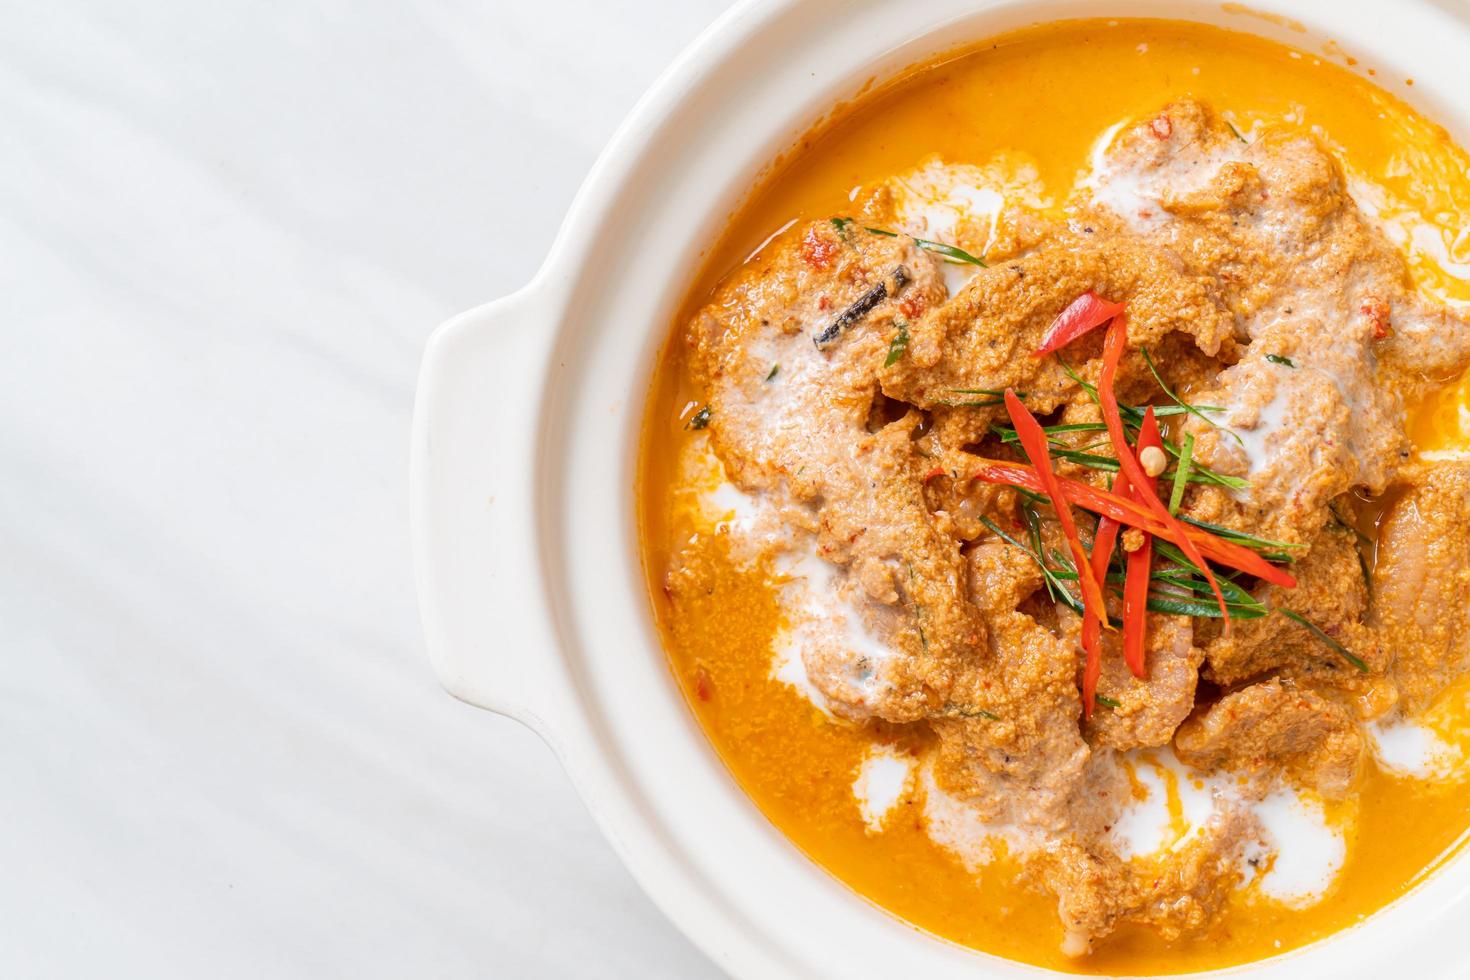 Panang-Curry mit Schweinefleisch foto